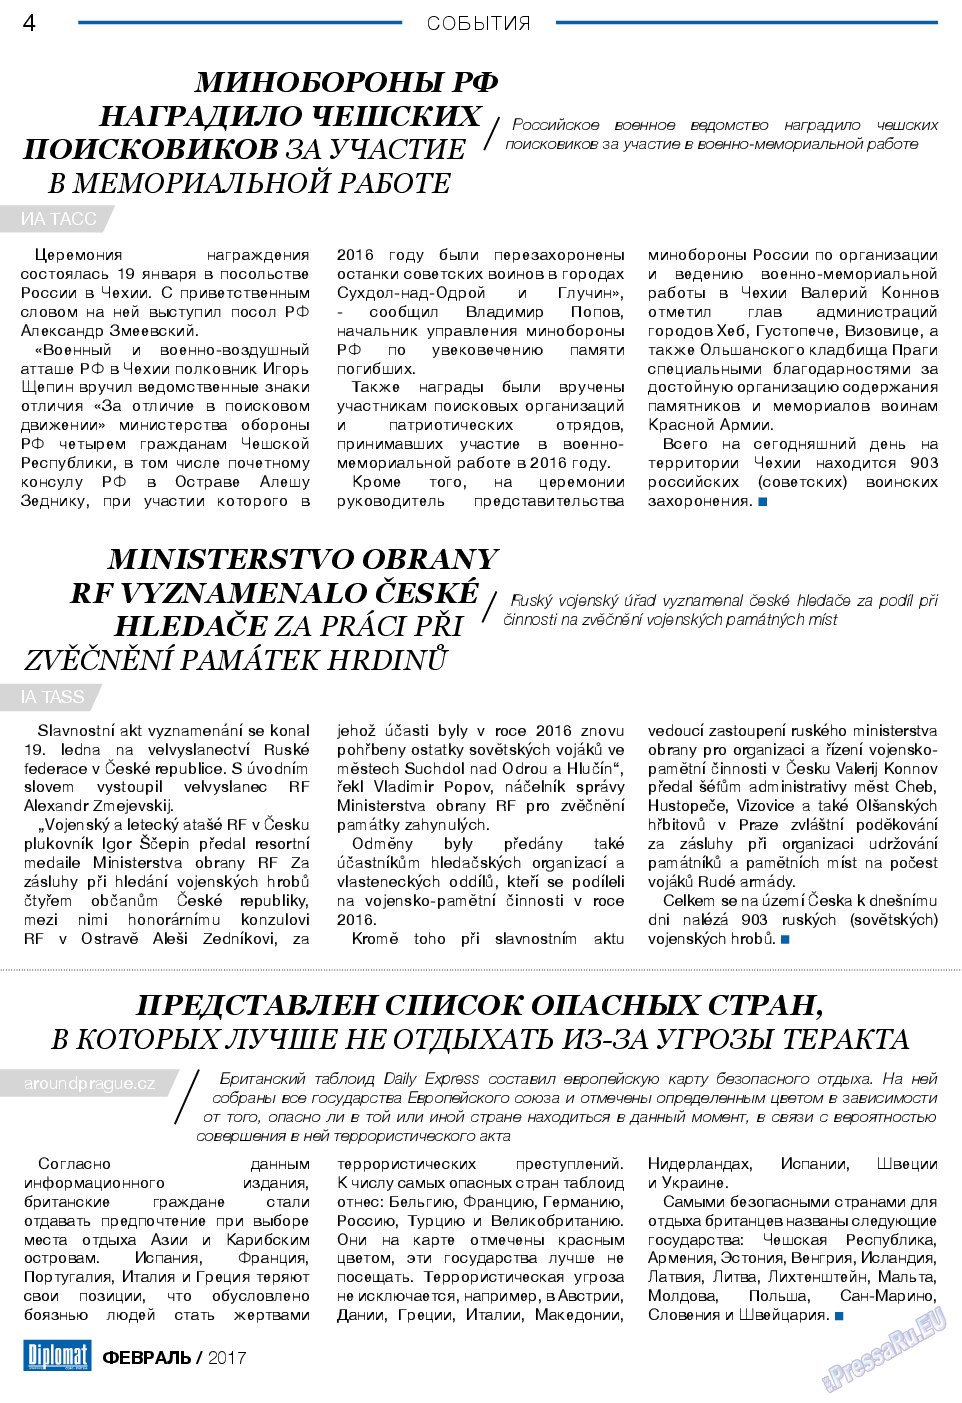 Diplomat (газета). 2017 год, номер 89, стр. 4